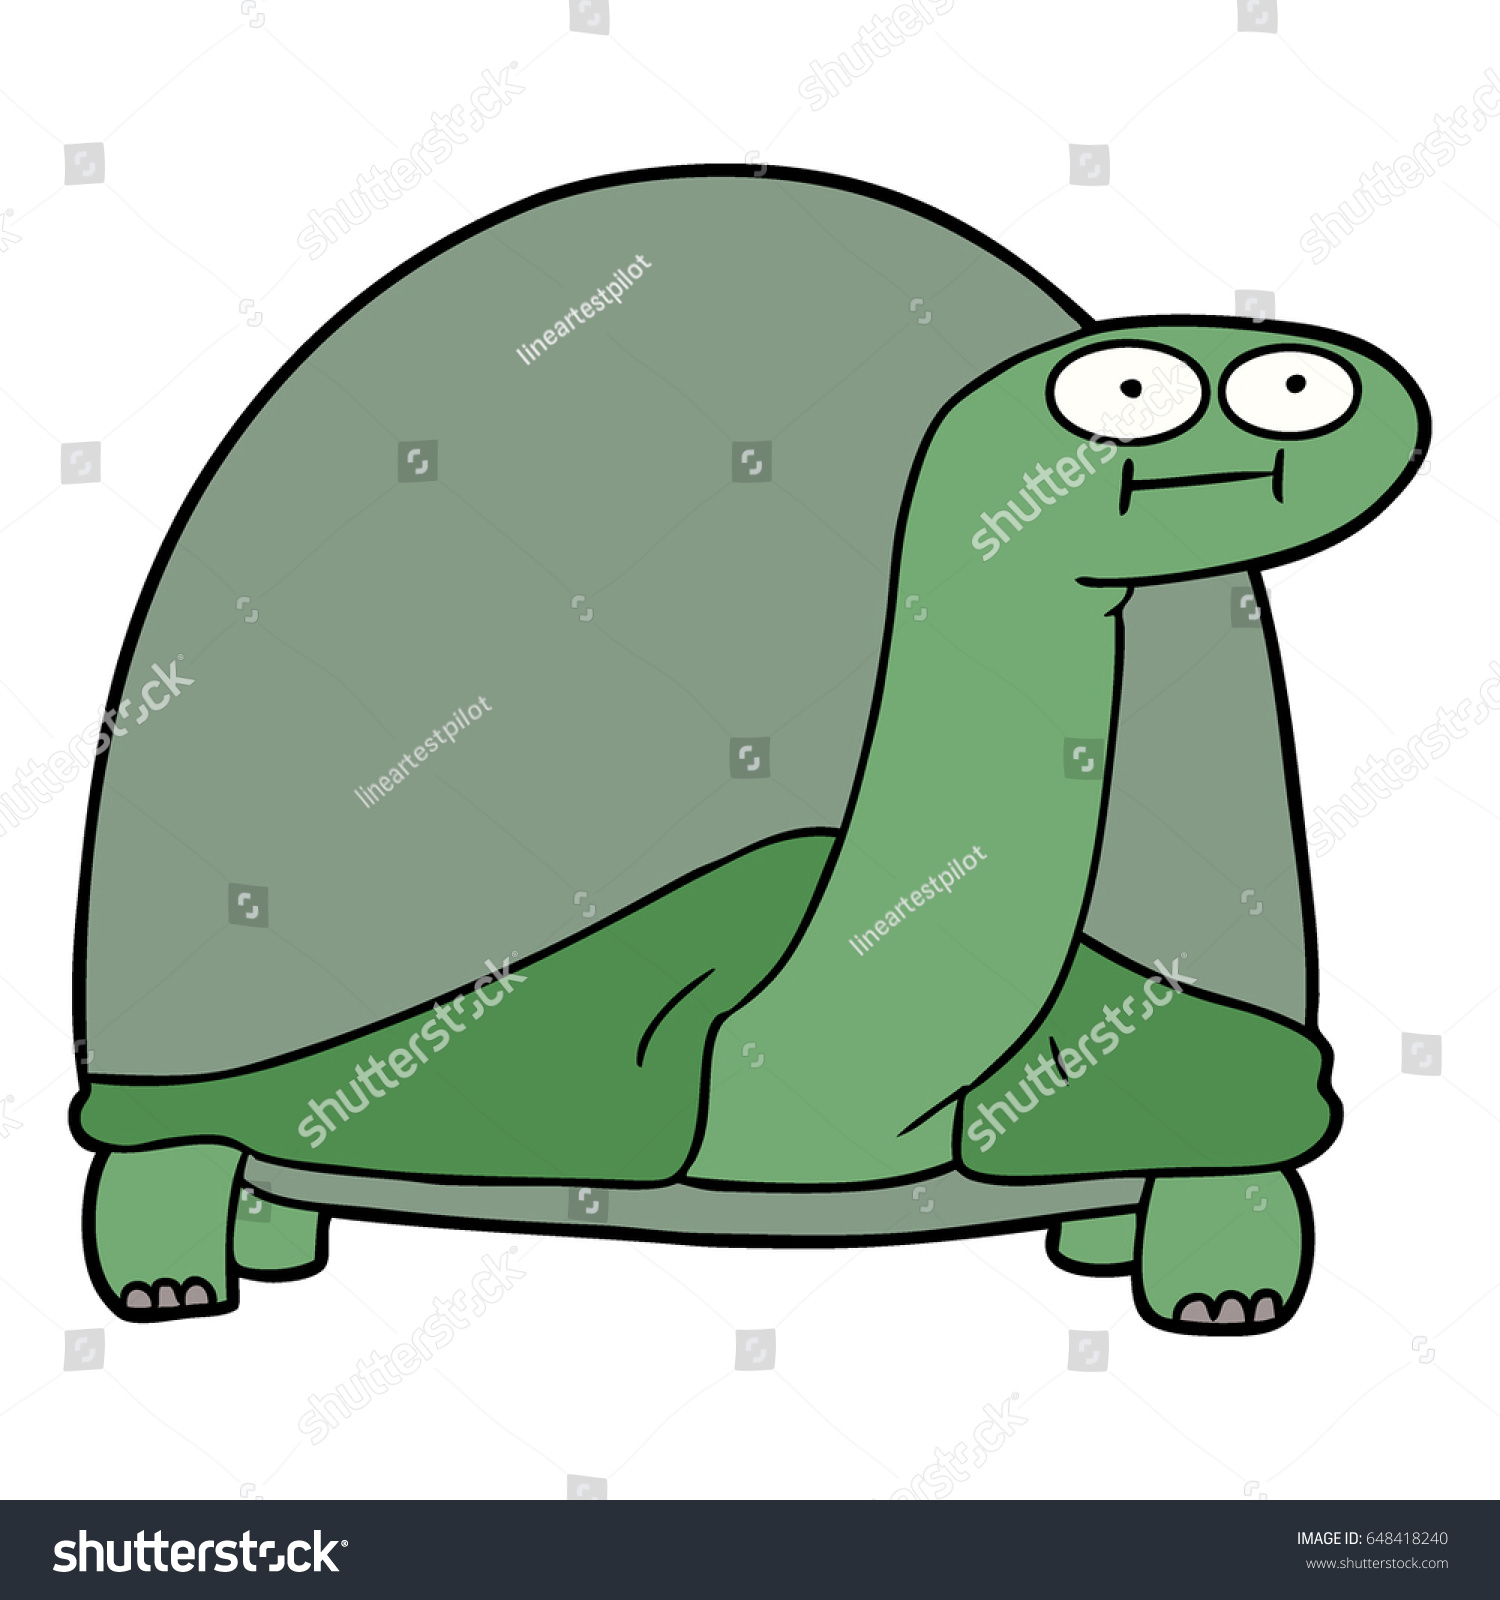 Cartoon Tortoise Stock Photo (Photo, Vector, Illustration) 648418240 ...